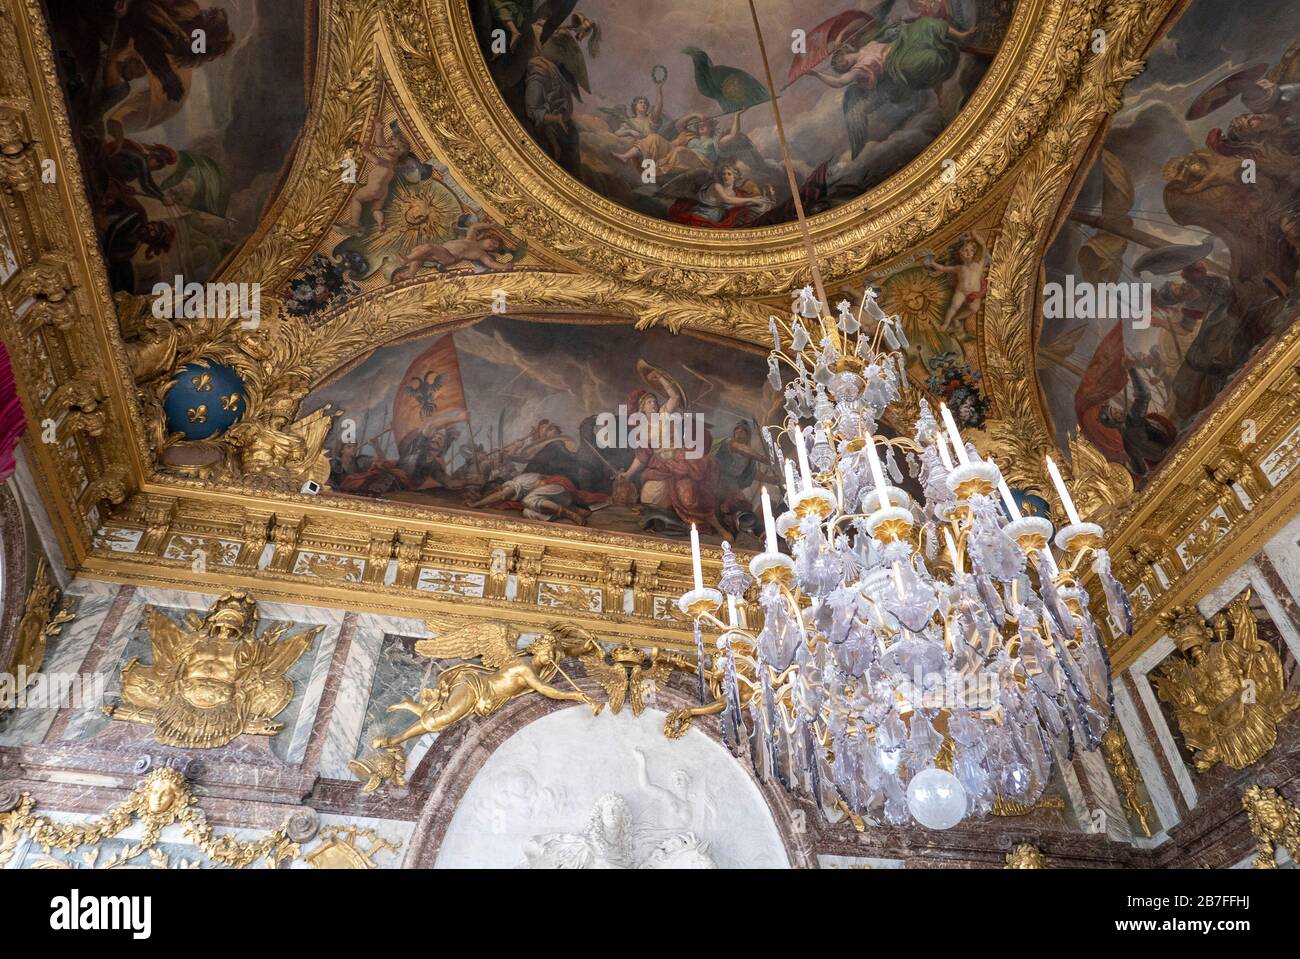 Detalles de los techos pintados en el Palacio de Versalles en las afueras de París, Francia, Europa Foto de stock